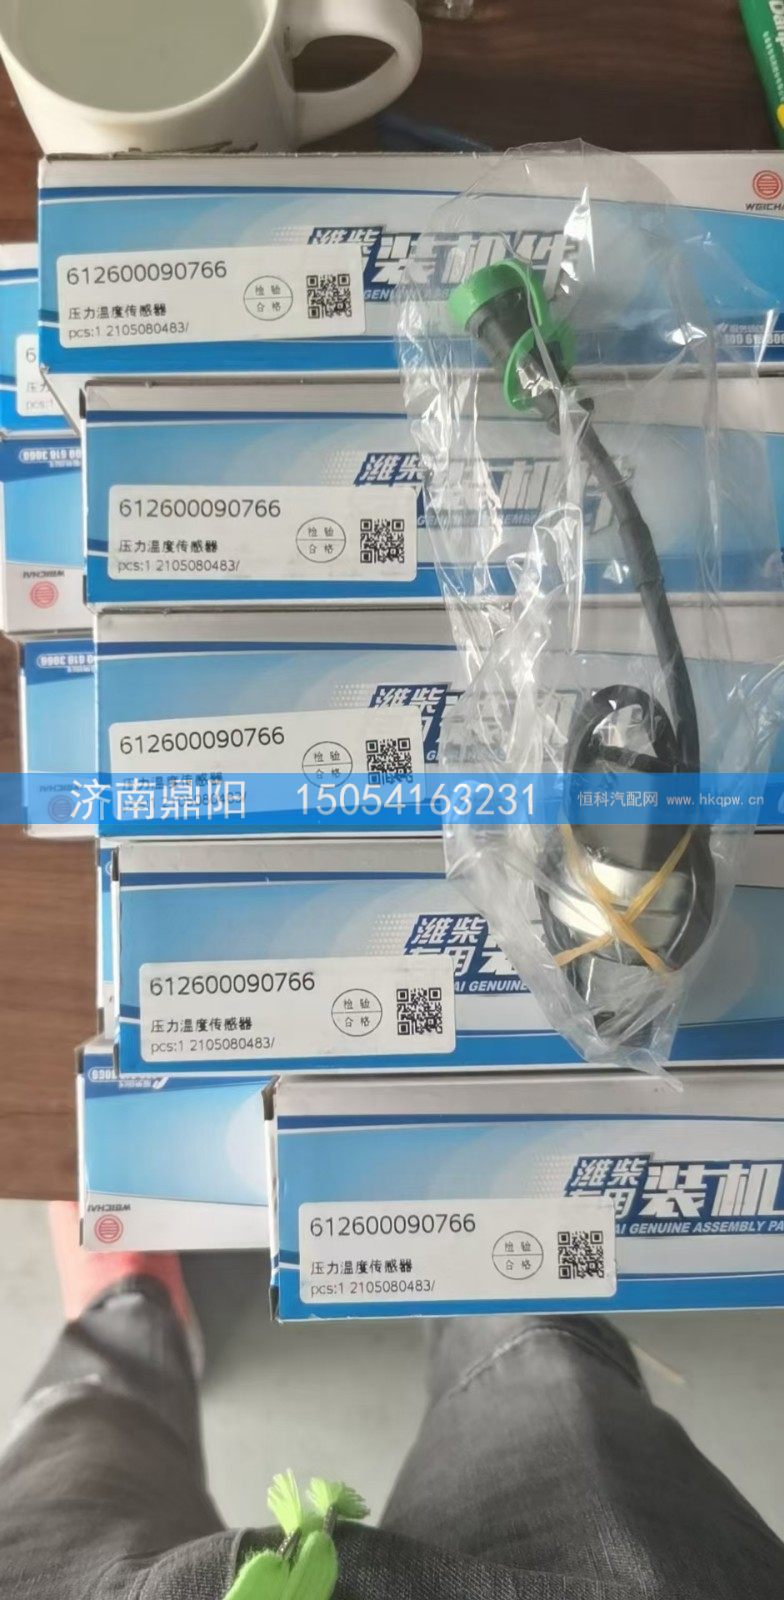 612600090766,压力温度传感器,济南鼎阳汽车配件有限公司